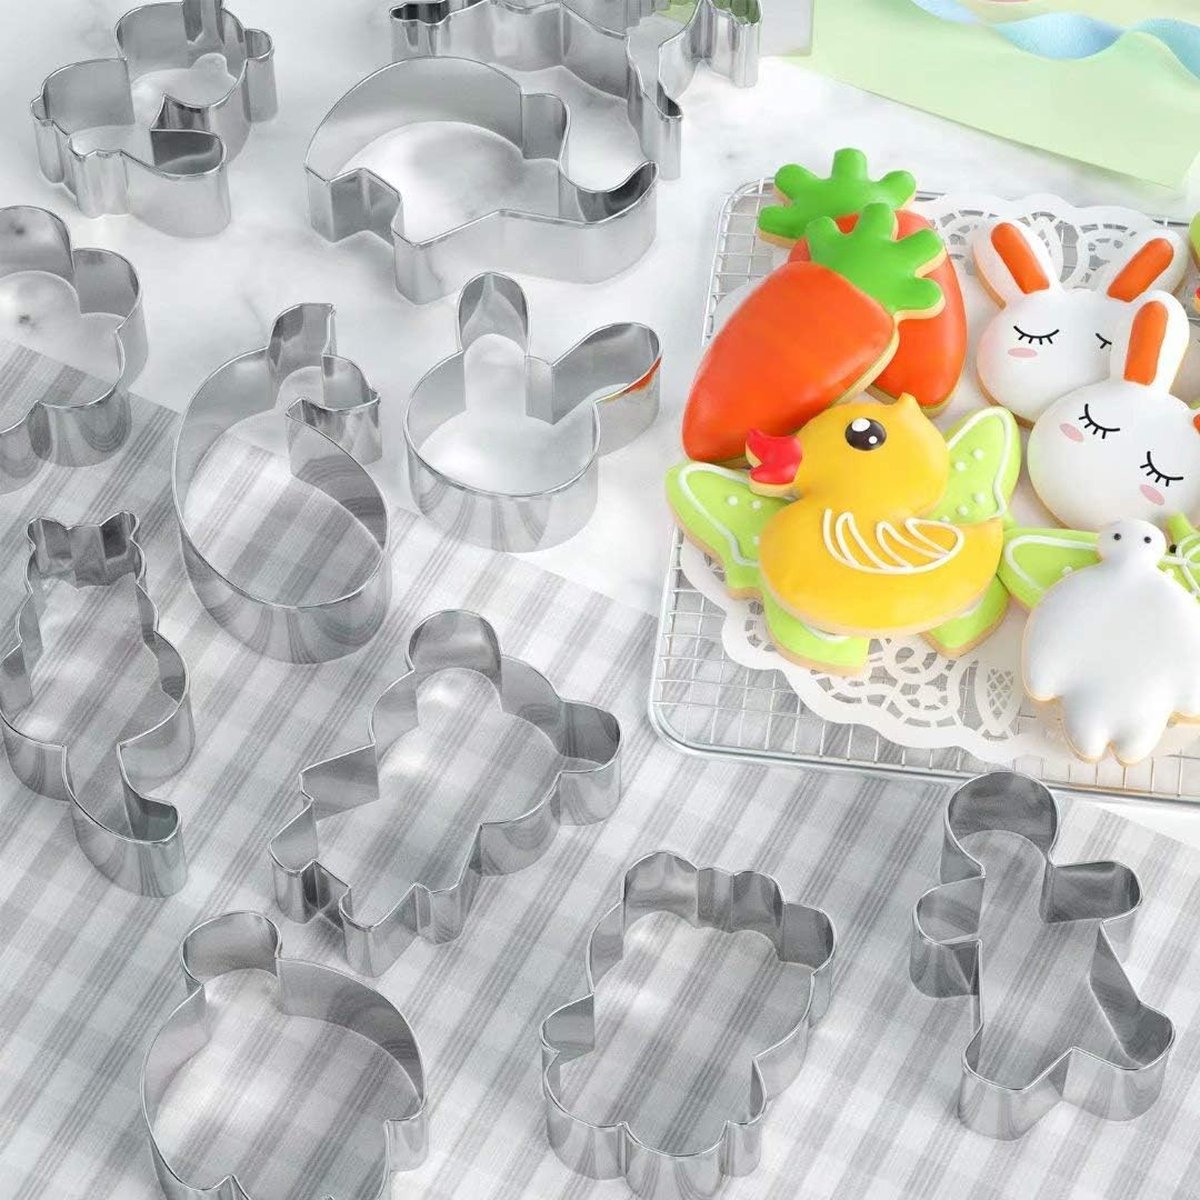 30 Pcs Cartoon Cookie Cutters Biscuit Mould Voor Diy Bakken Cake Fondant Sugarcraft Gebak Bakvormen Decoratie